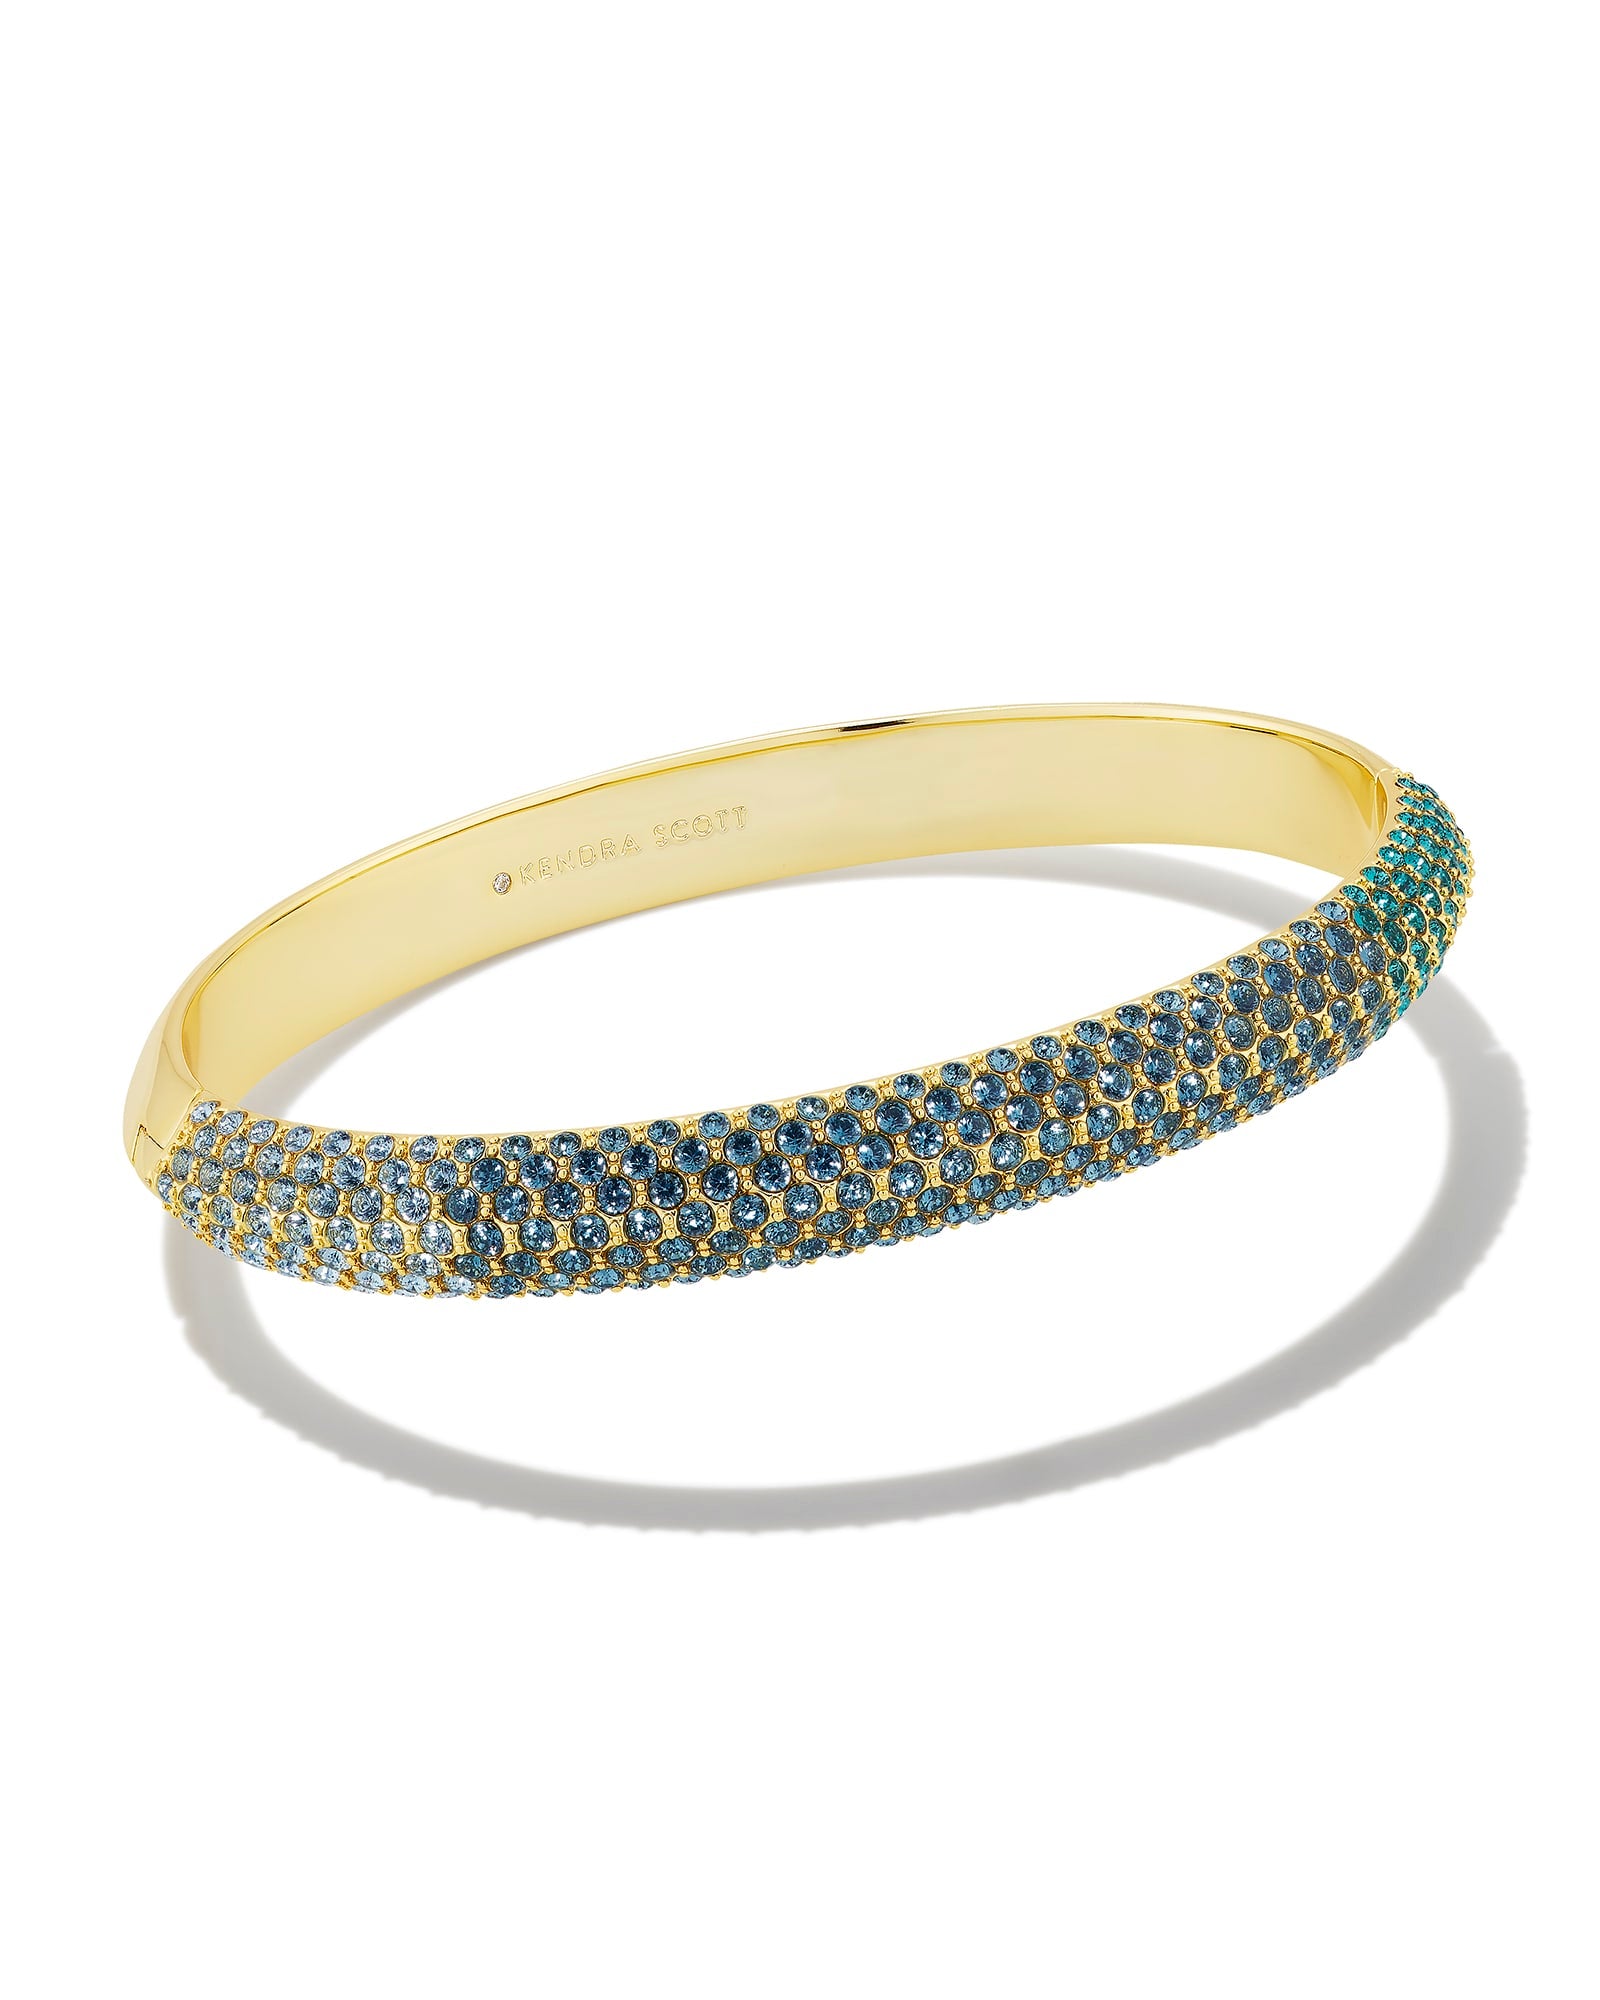 Kendra Scott Mikki Pave Bangle Bracelet Gold Green Blue Ombre CZ M/L-Bracelets-Kendra Scott-B00120GLD-The Twisted Chandelier